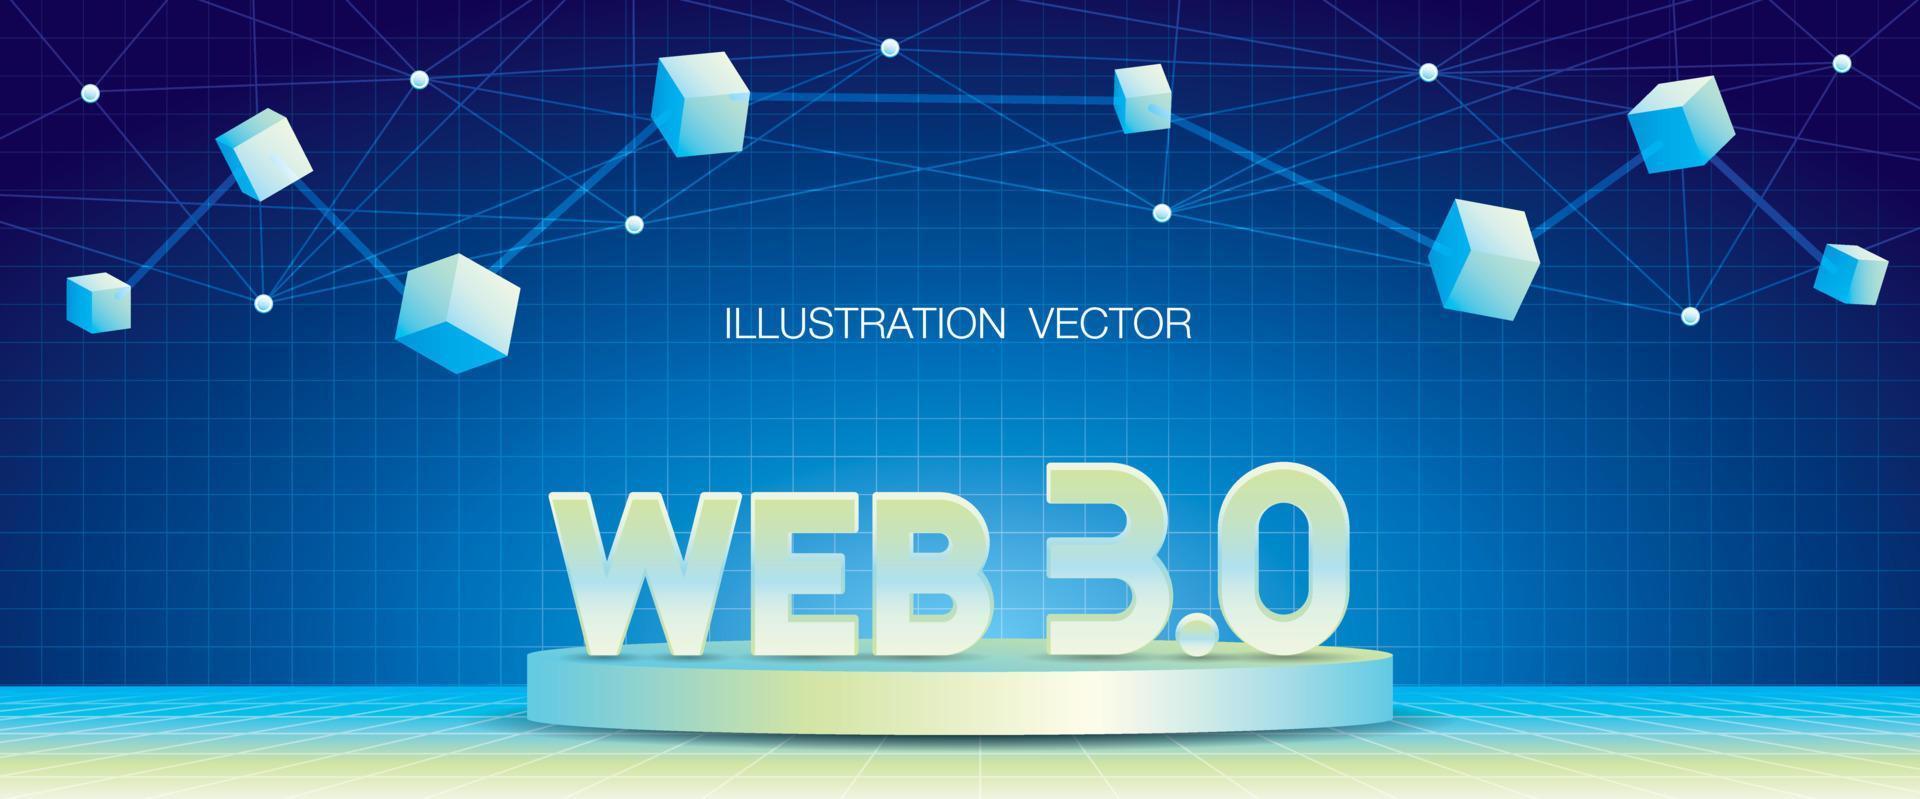 texto web 3.0 en vector de ilustración 3d de podio con elemento gráfico blockchain en fondo futurista de patrón de cuadrícula ancha